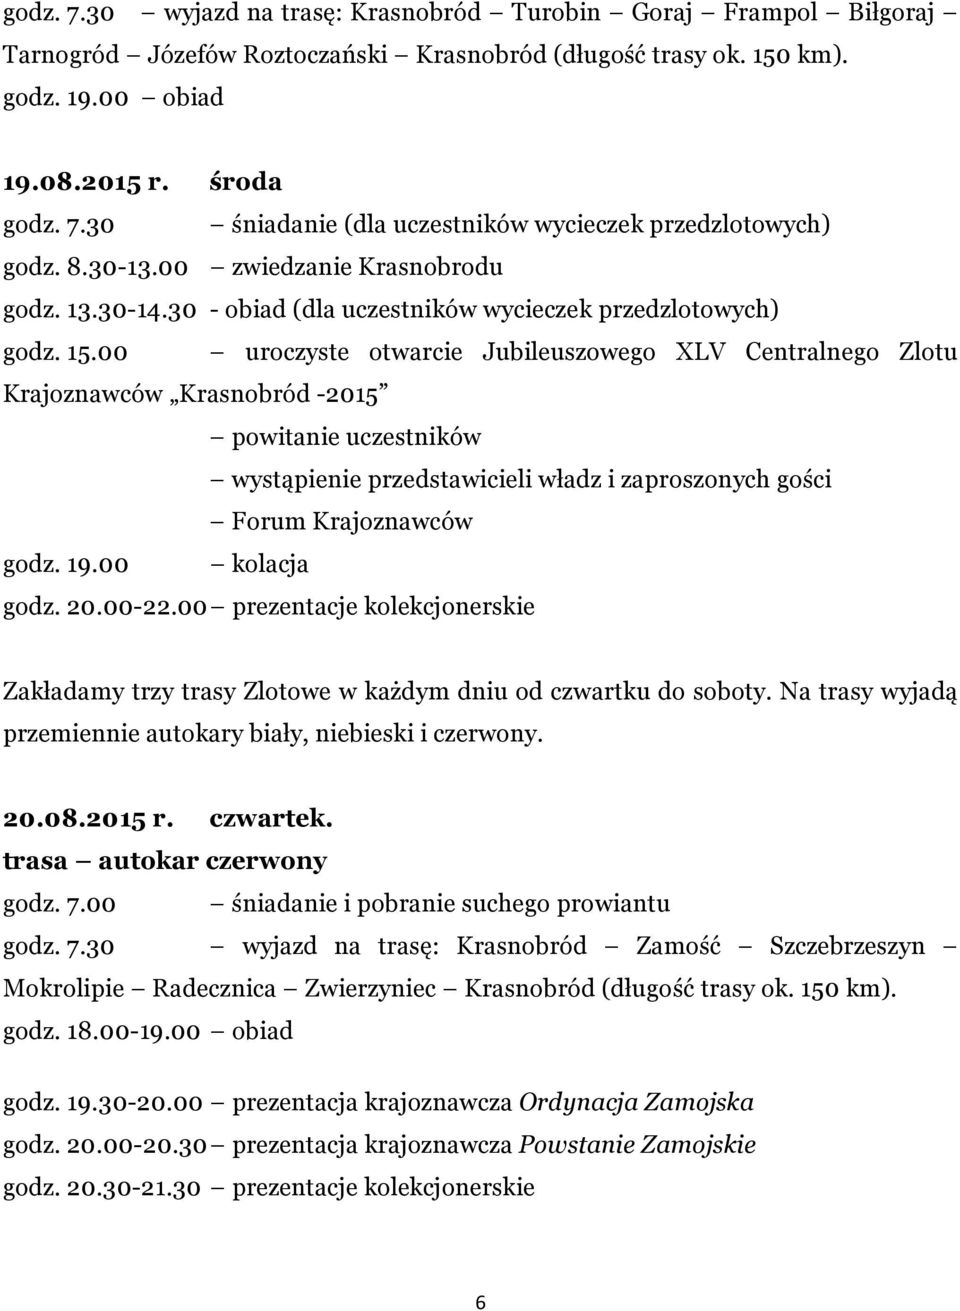 00 uroczyste otwarcie Jubileuszowego XLV Centralnego Zlotu Krajoznawców Krasnobród -2015 powitanie uczestników wystąpienie przedstawicieli władz i zaproszonych gości Forum Krajoznawców godz. 19.